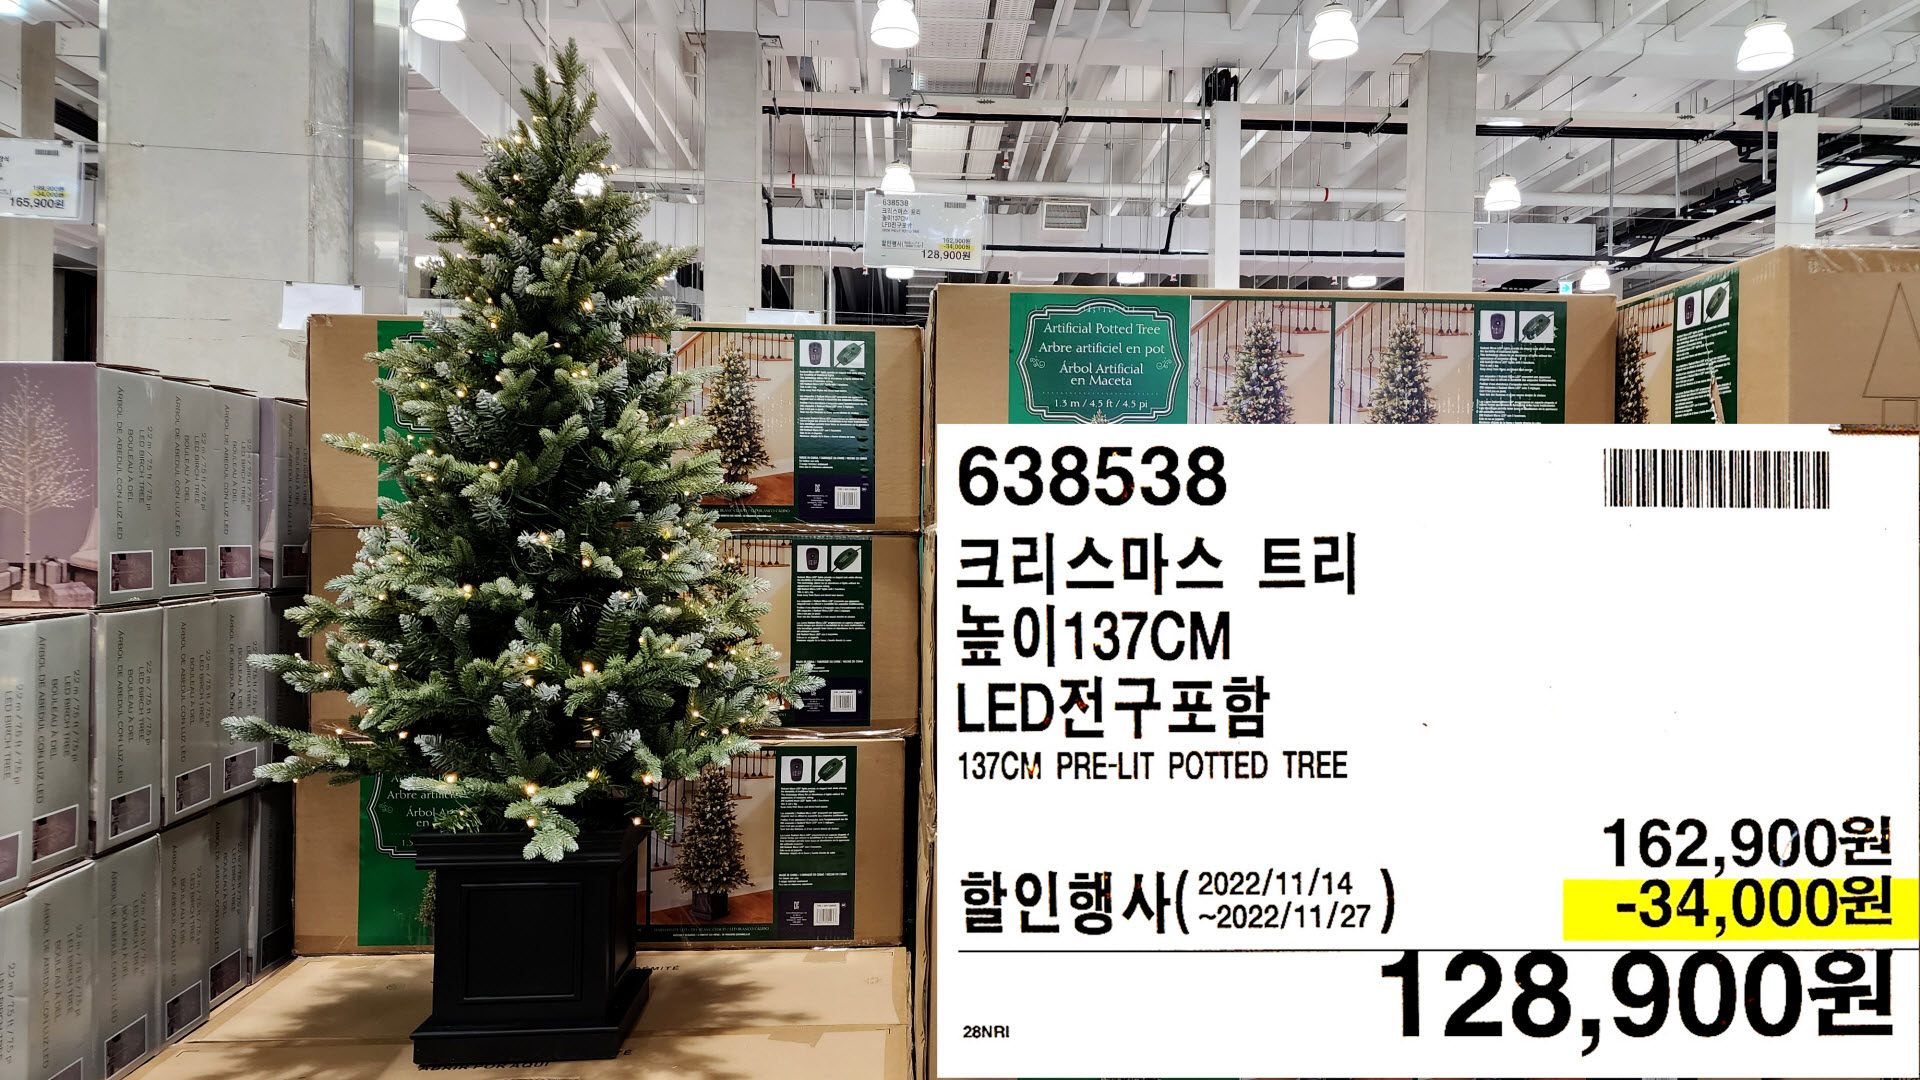 크리스마스 트리
높이137CM
LED전구포함
137CM PRE-LIT POTTED TREE
128&#44;900원